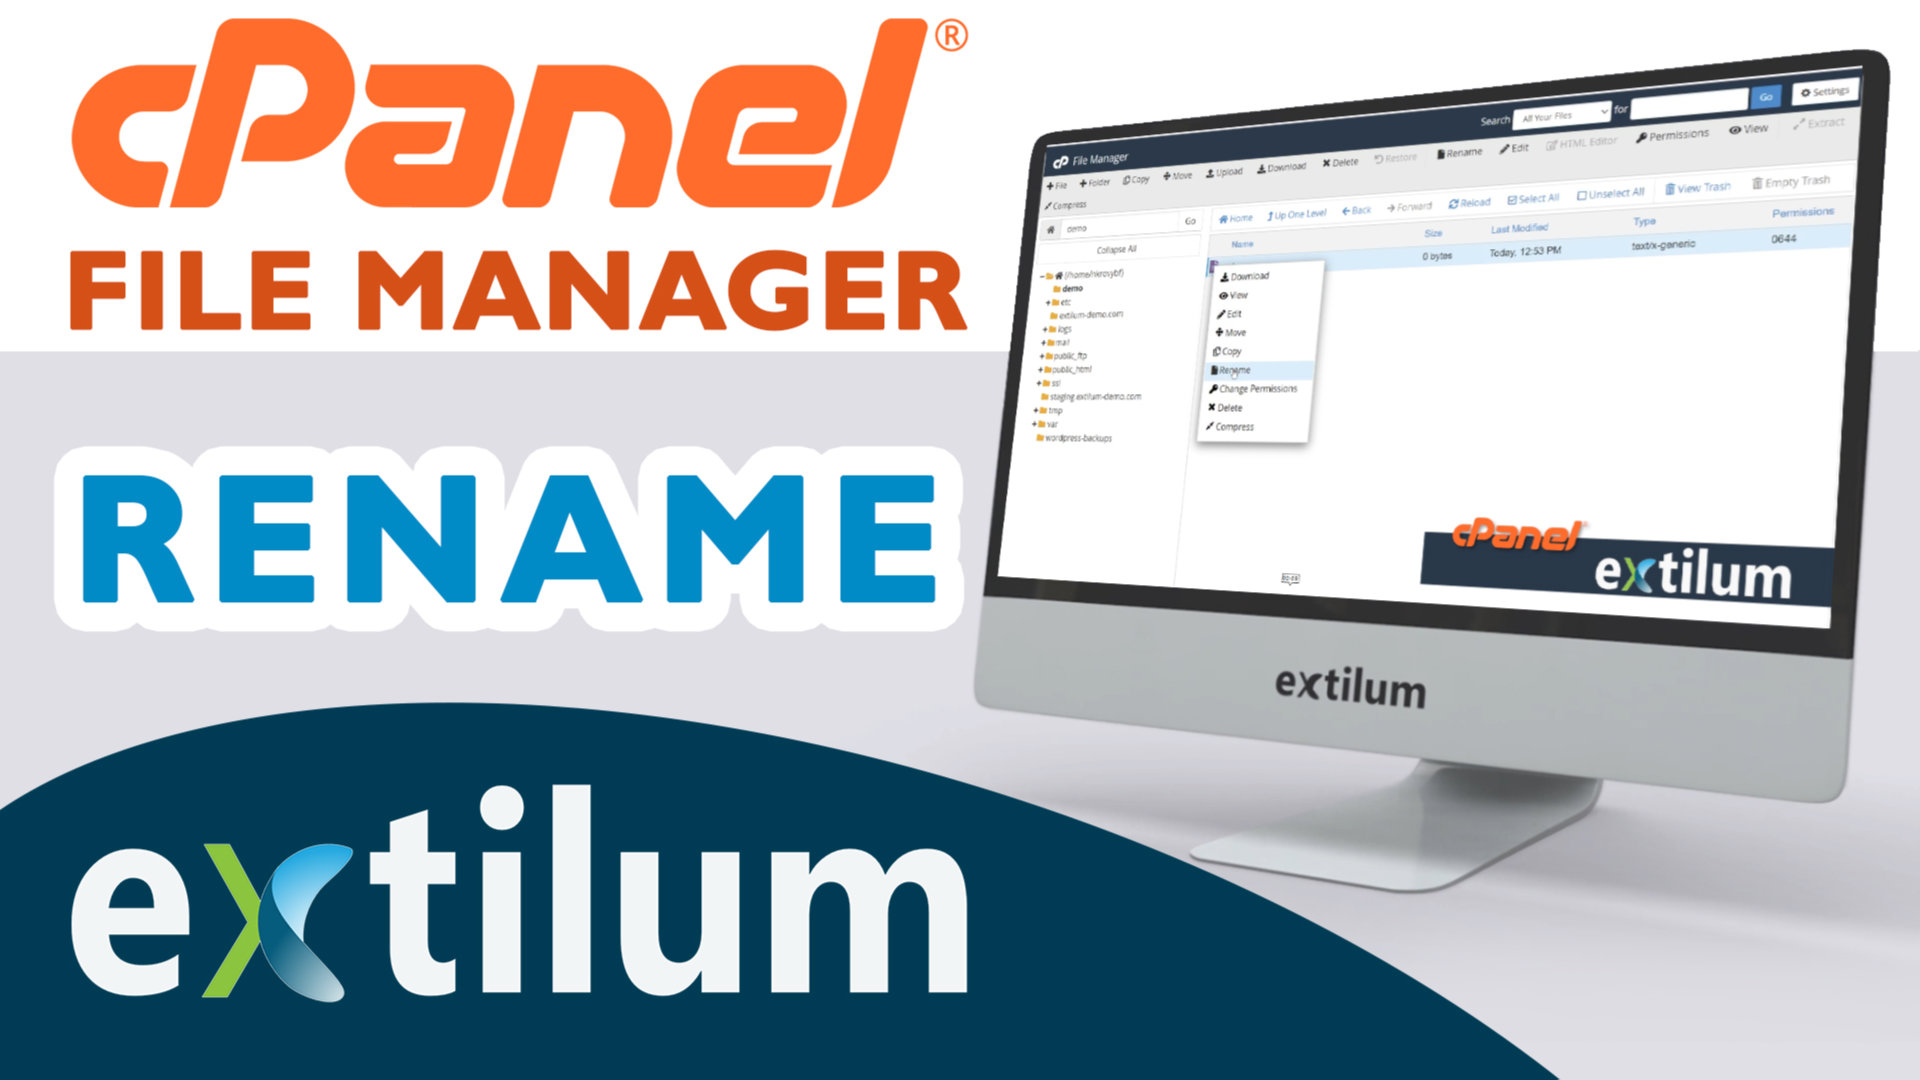 Extilum cpanel - file manager - rename